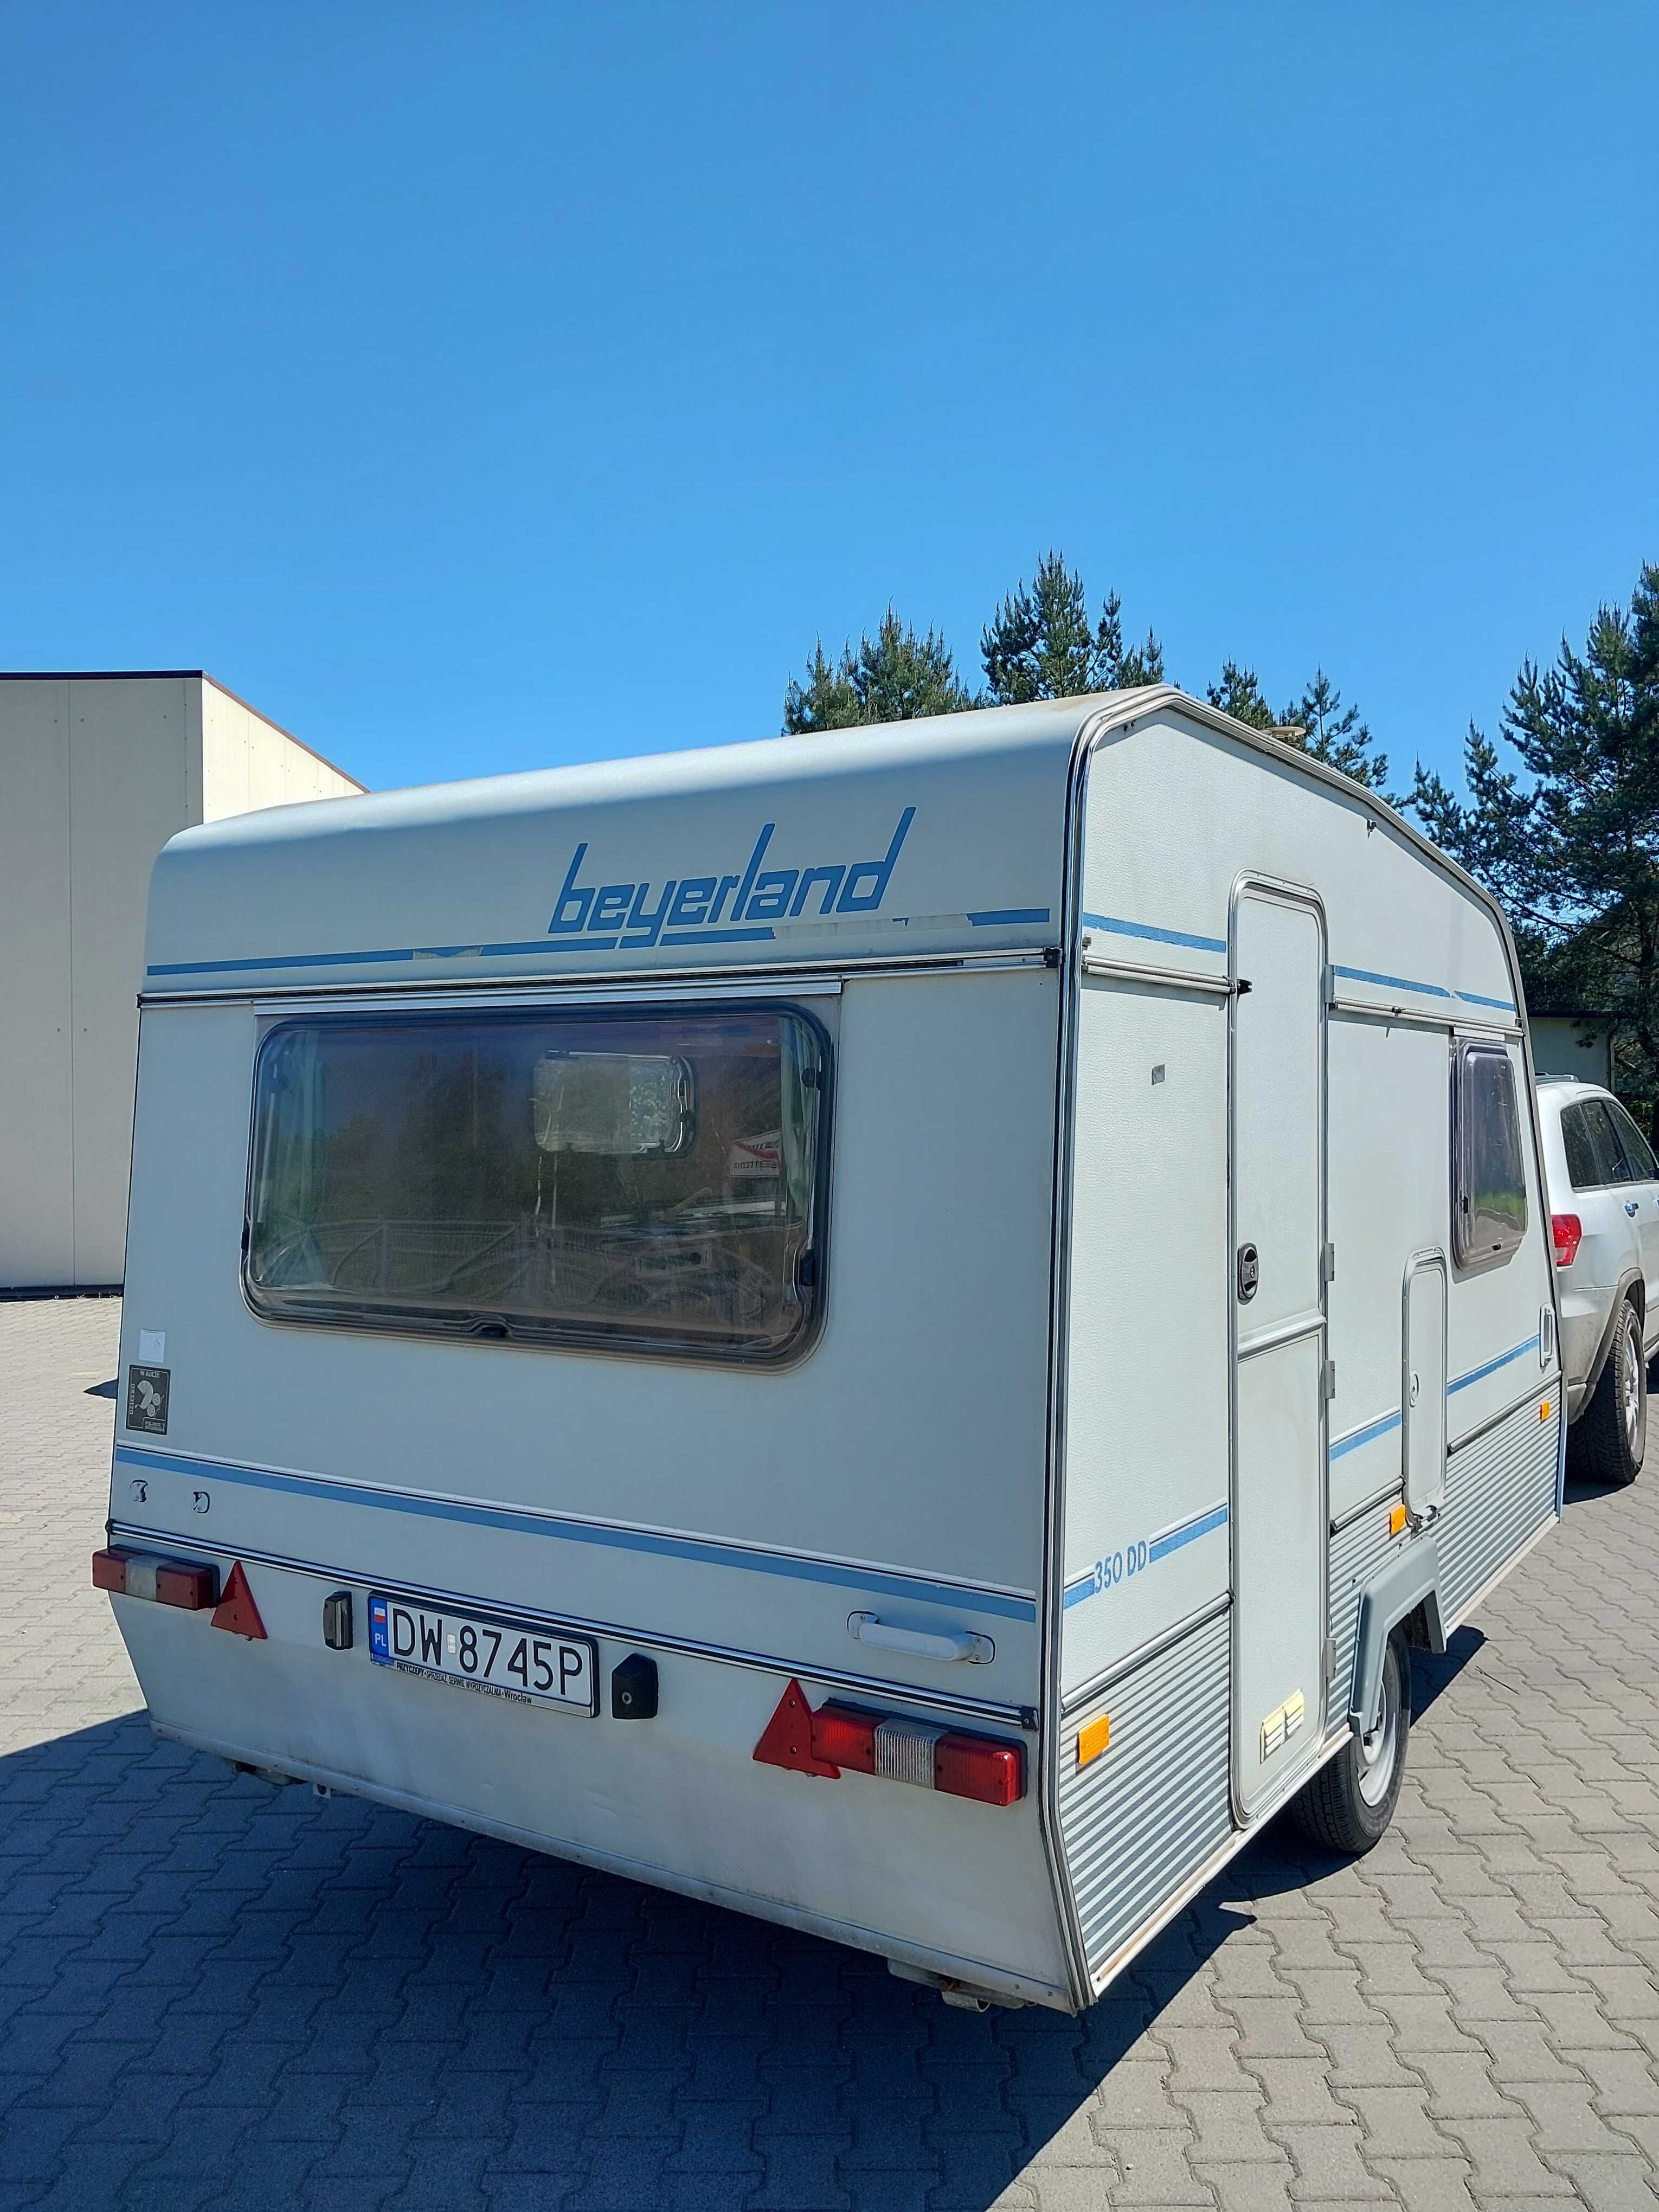 Przyczepa campingowa Beyerland vitese 350 z przedsionkiem Wrocław